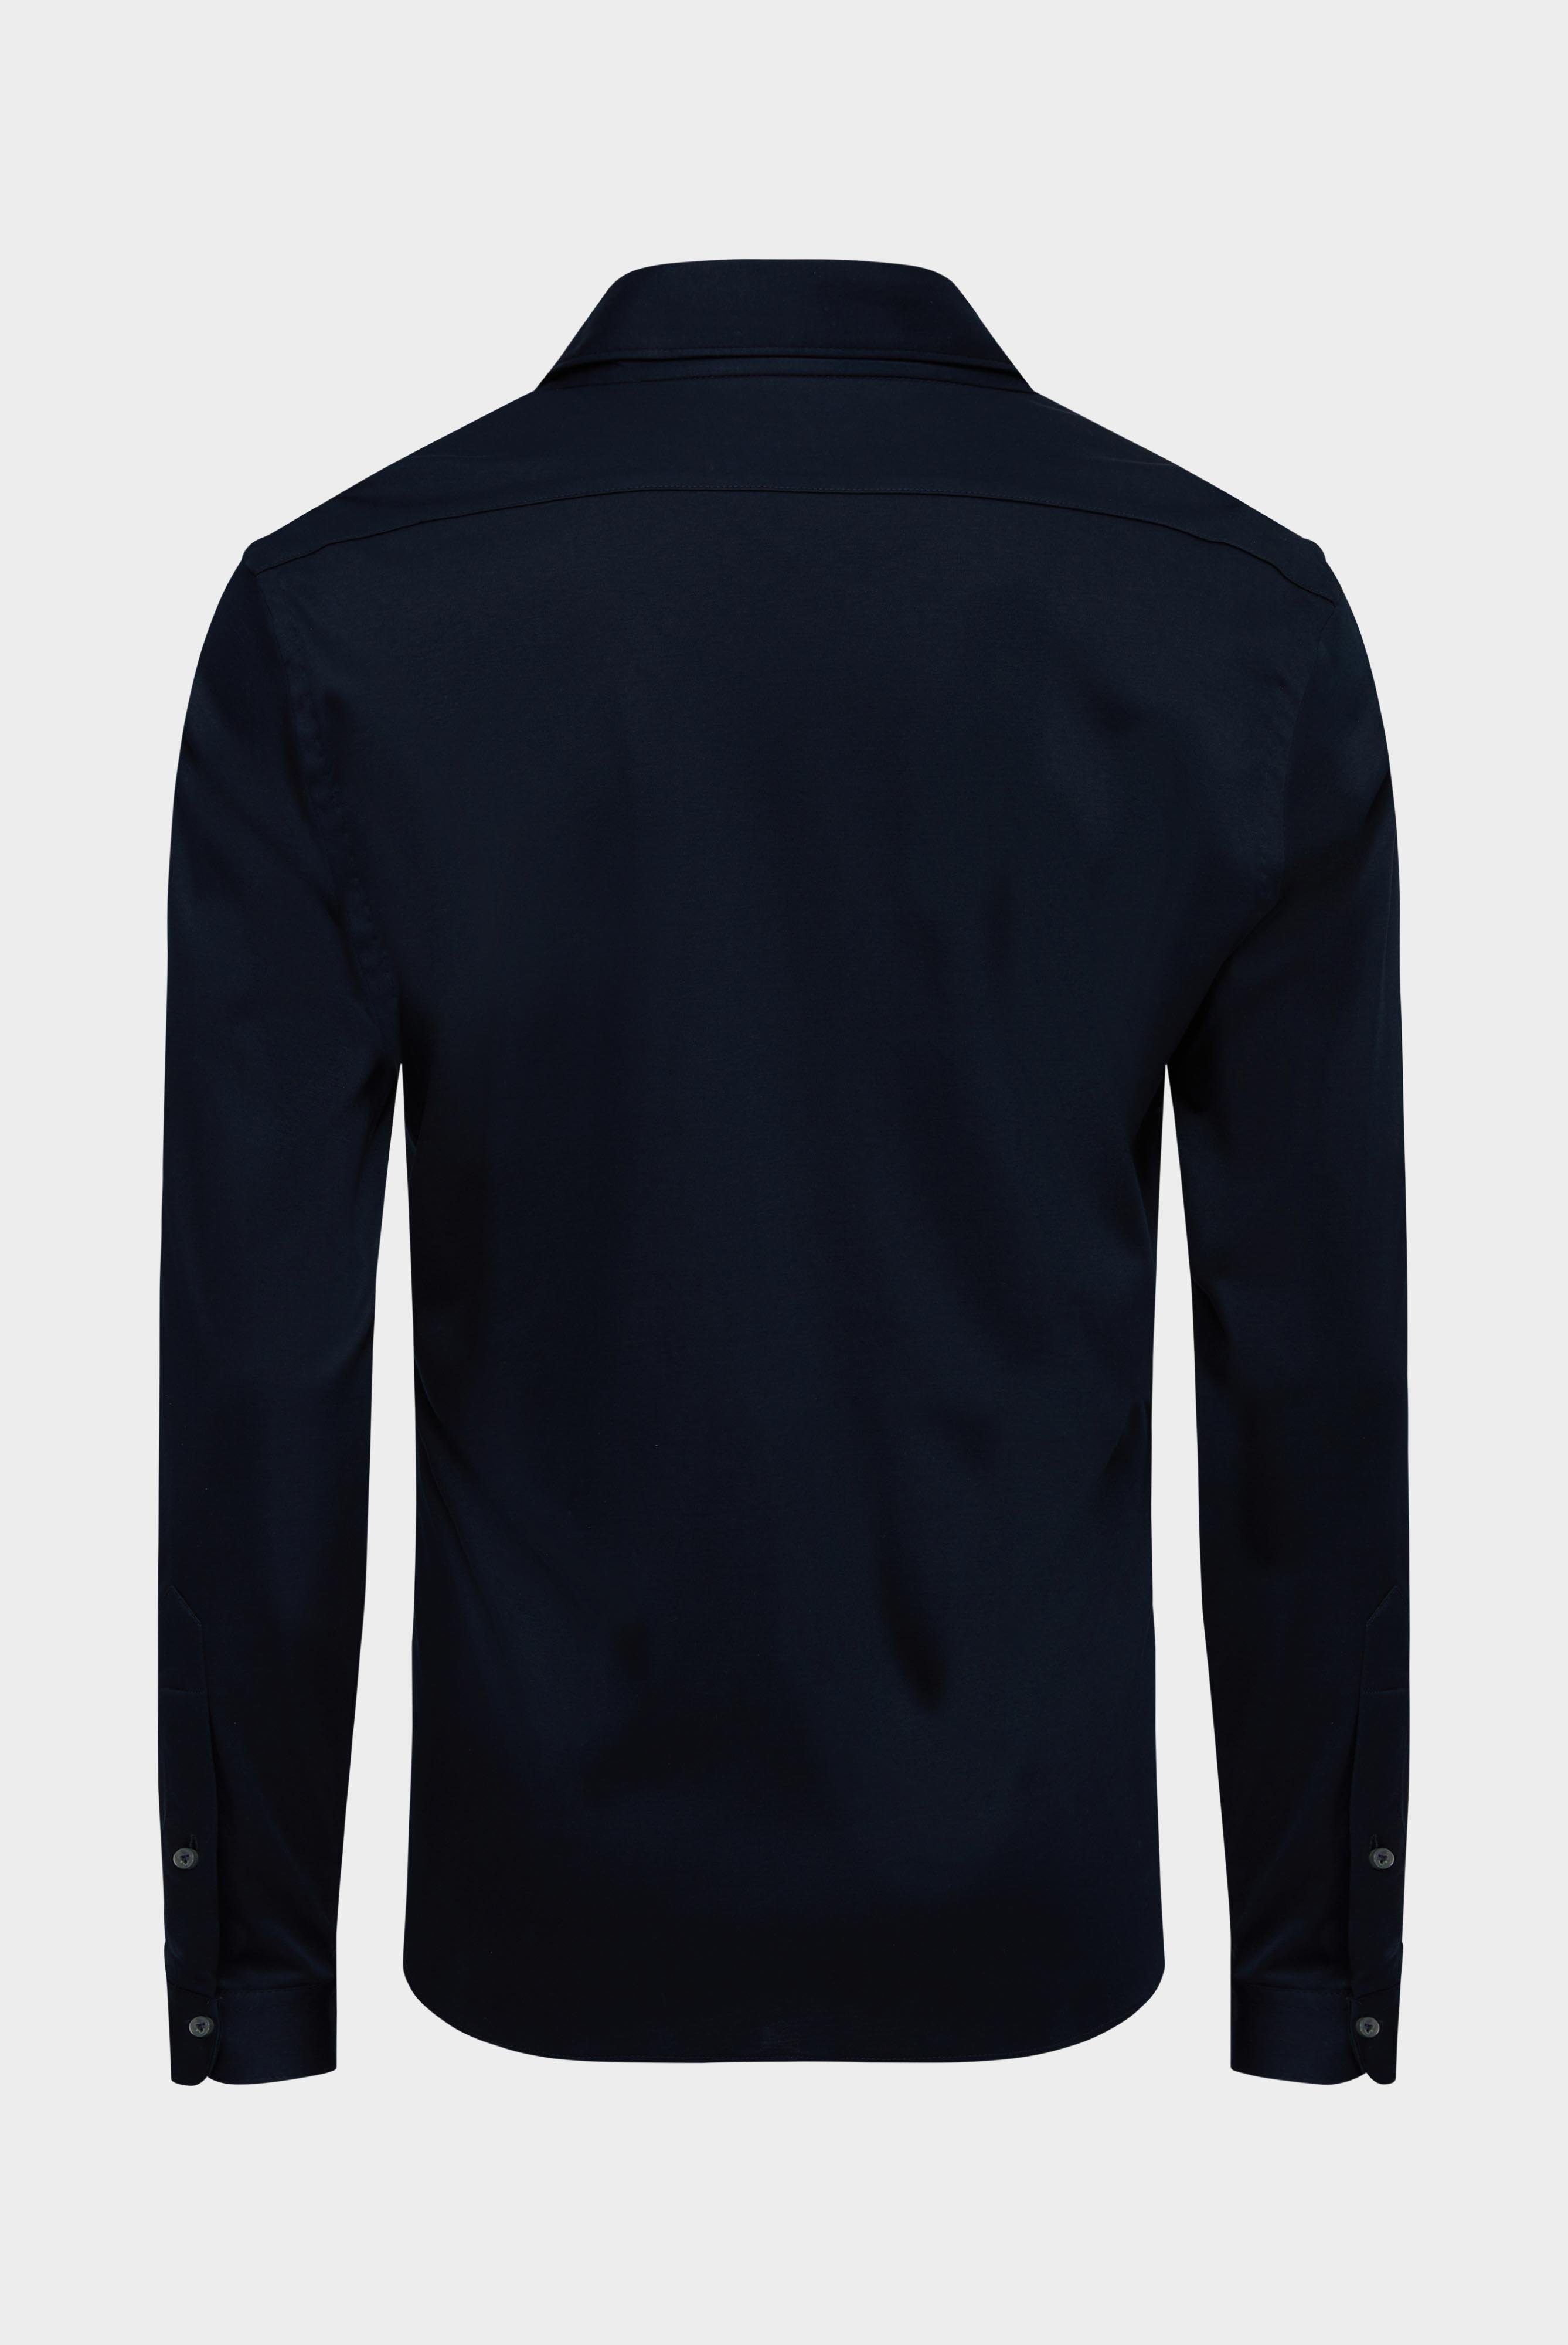 Bügelleichte Hemden+Jersey Hemd mit glänzender Optik Tailor Fit+20.1683.UC.180031.790.M